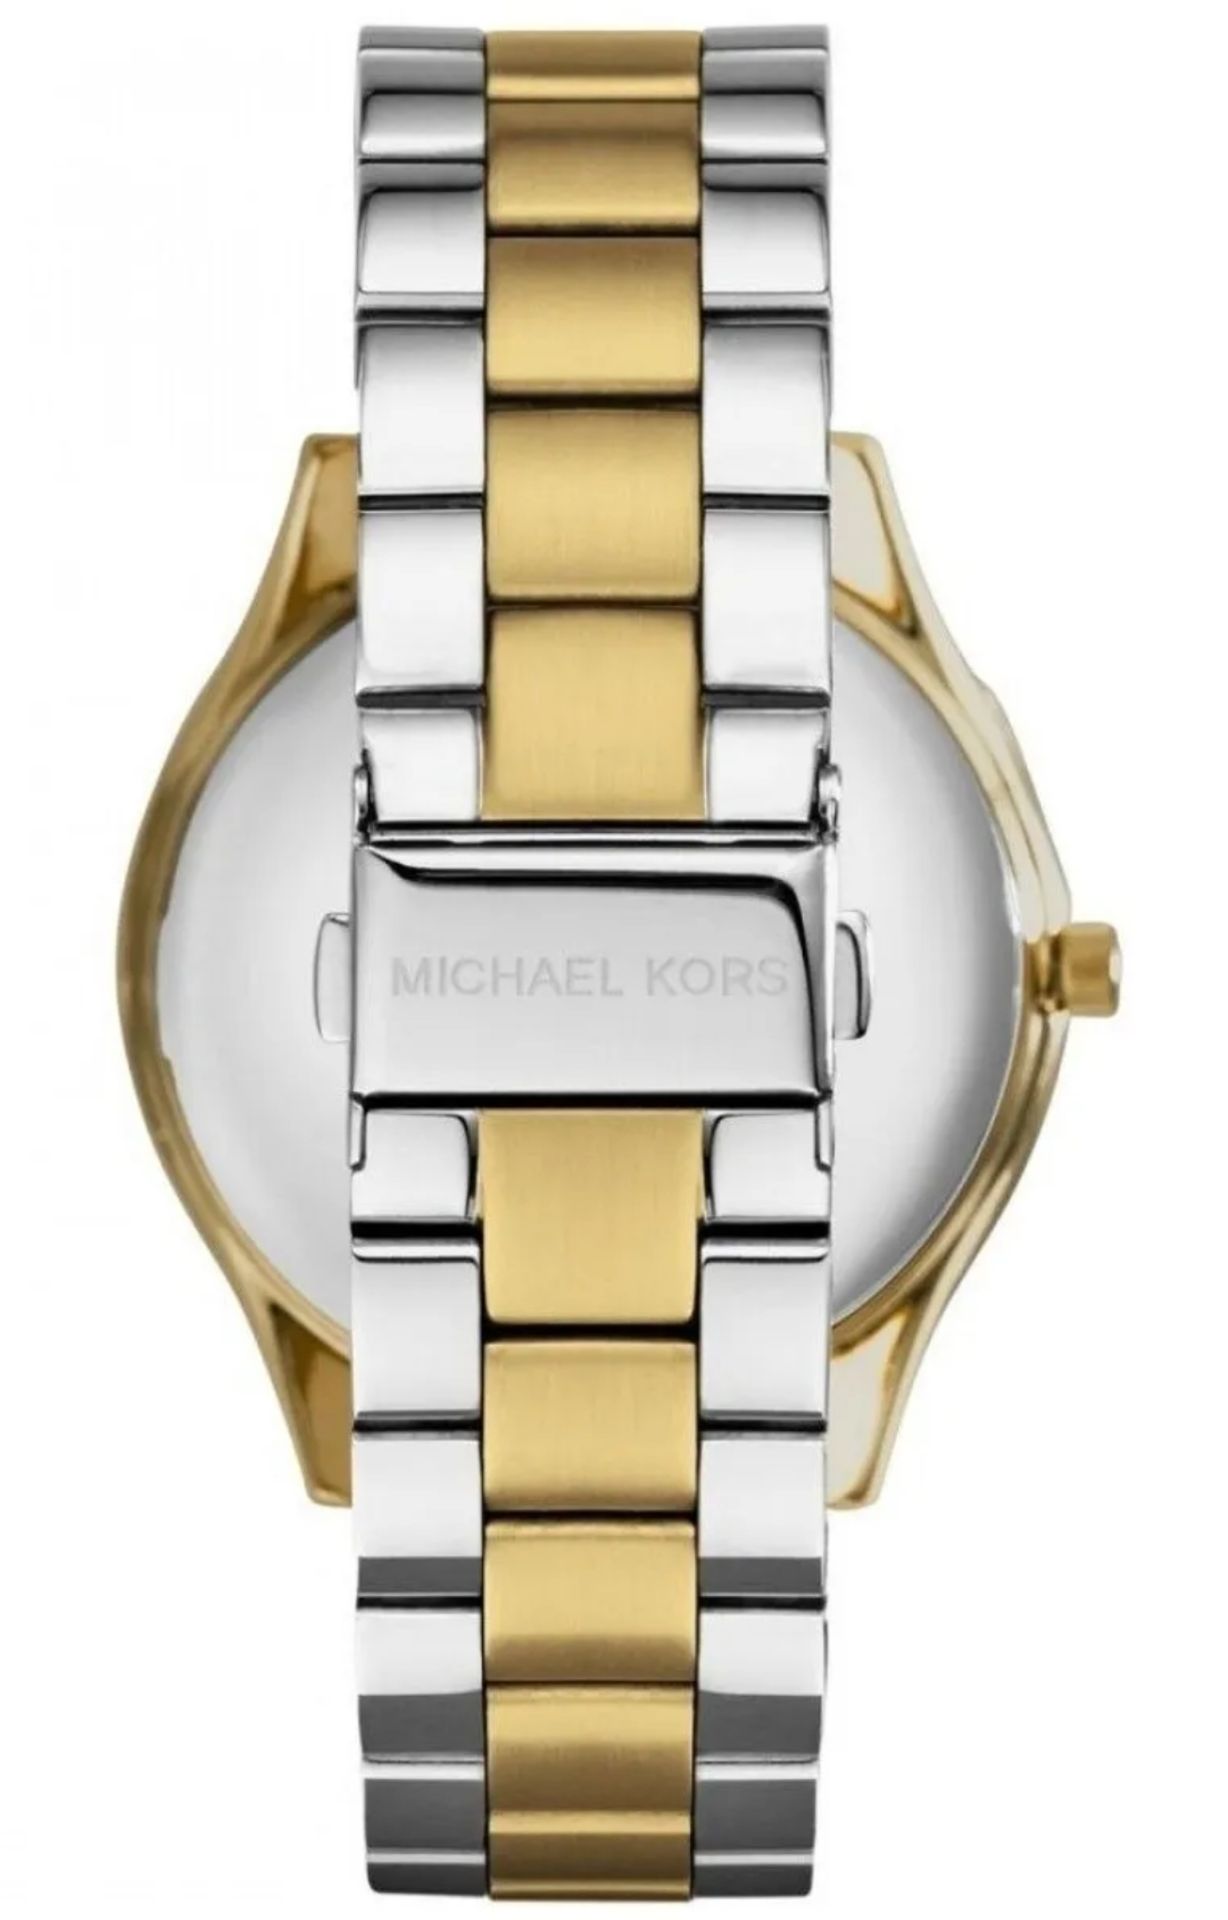 Michael Kors MK3479 Ladies Slim Runway Watch Two Tone Stainless Steel Blue Dial Quartz Watch - Image 3 of 7